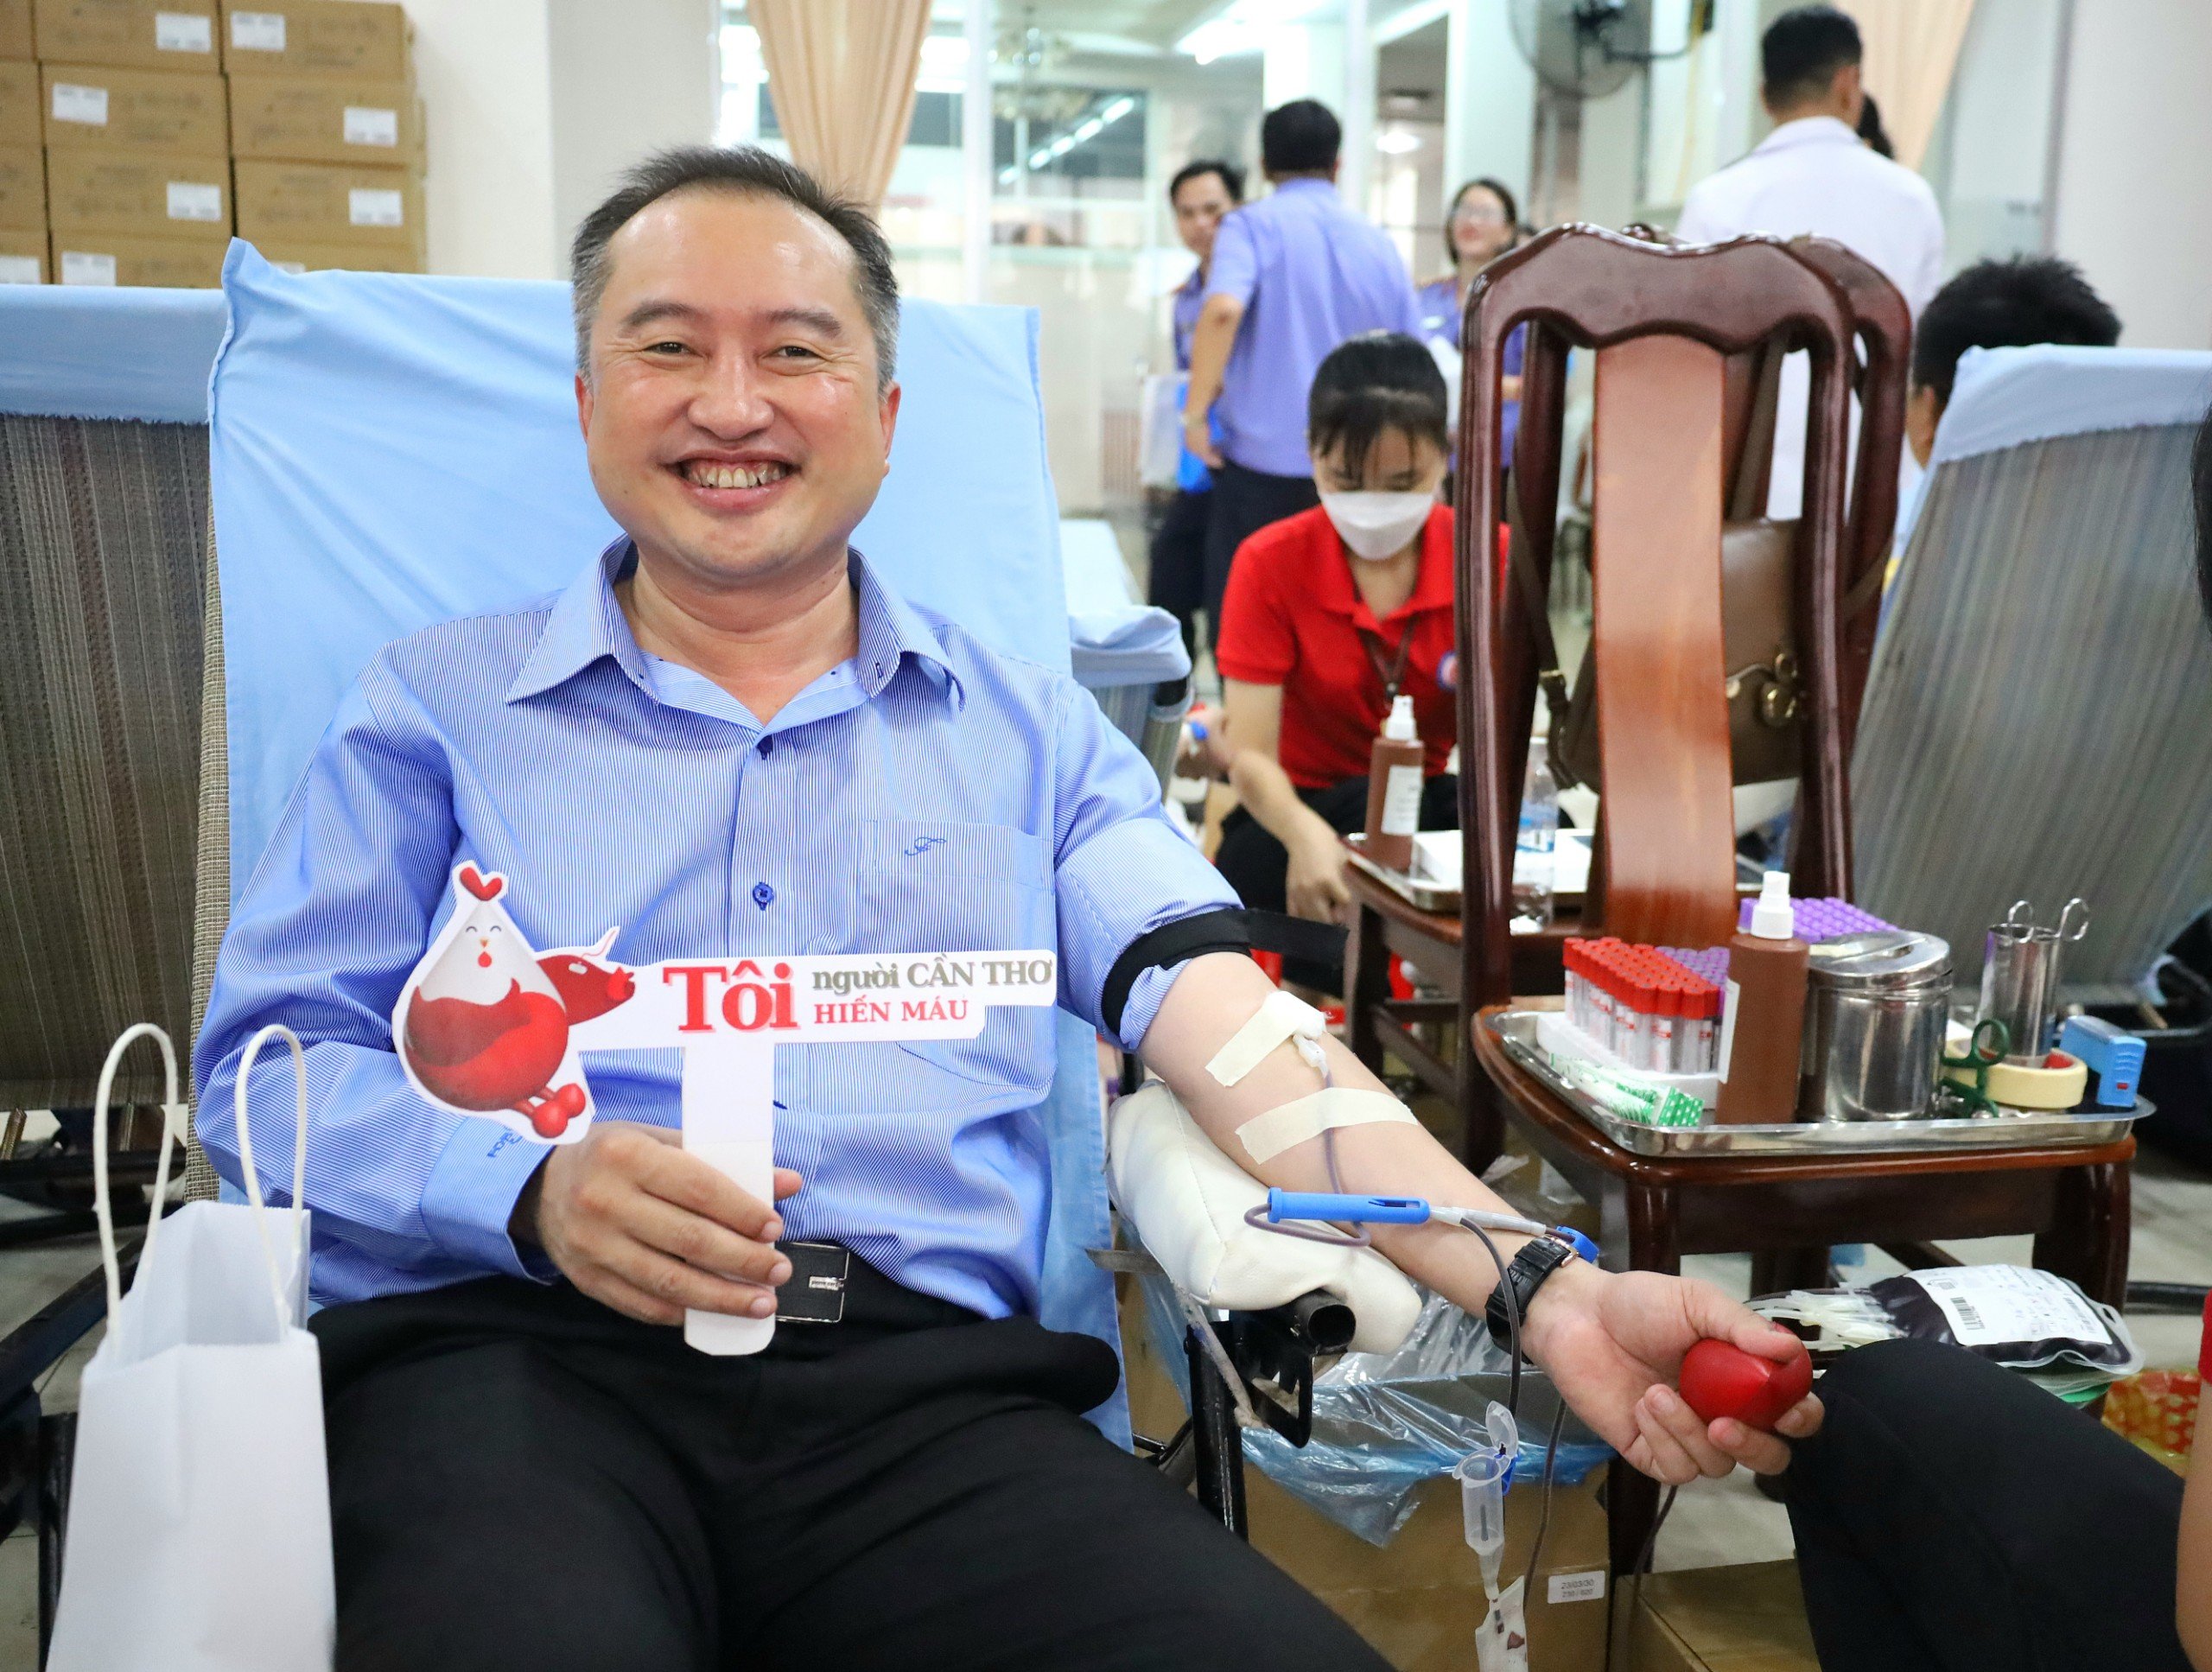 Ông Huỳnh Văn Tùng - Phó Bí thư Thường trực Huyện ủy Thới Lai tham gia hiến máu.